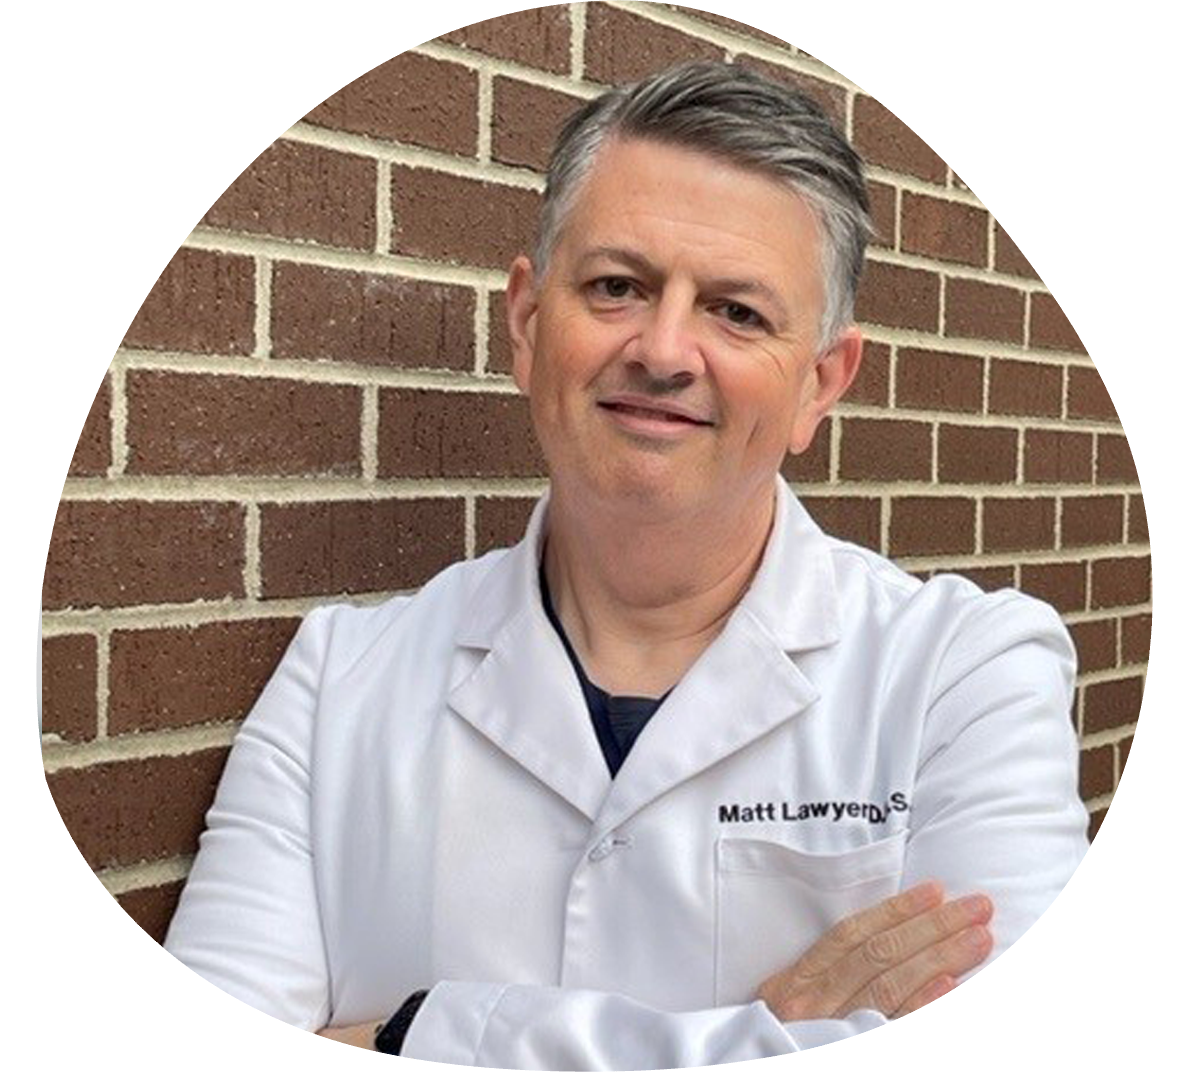 Dr. Matt Lawyer